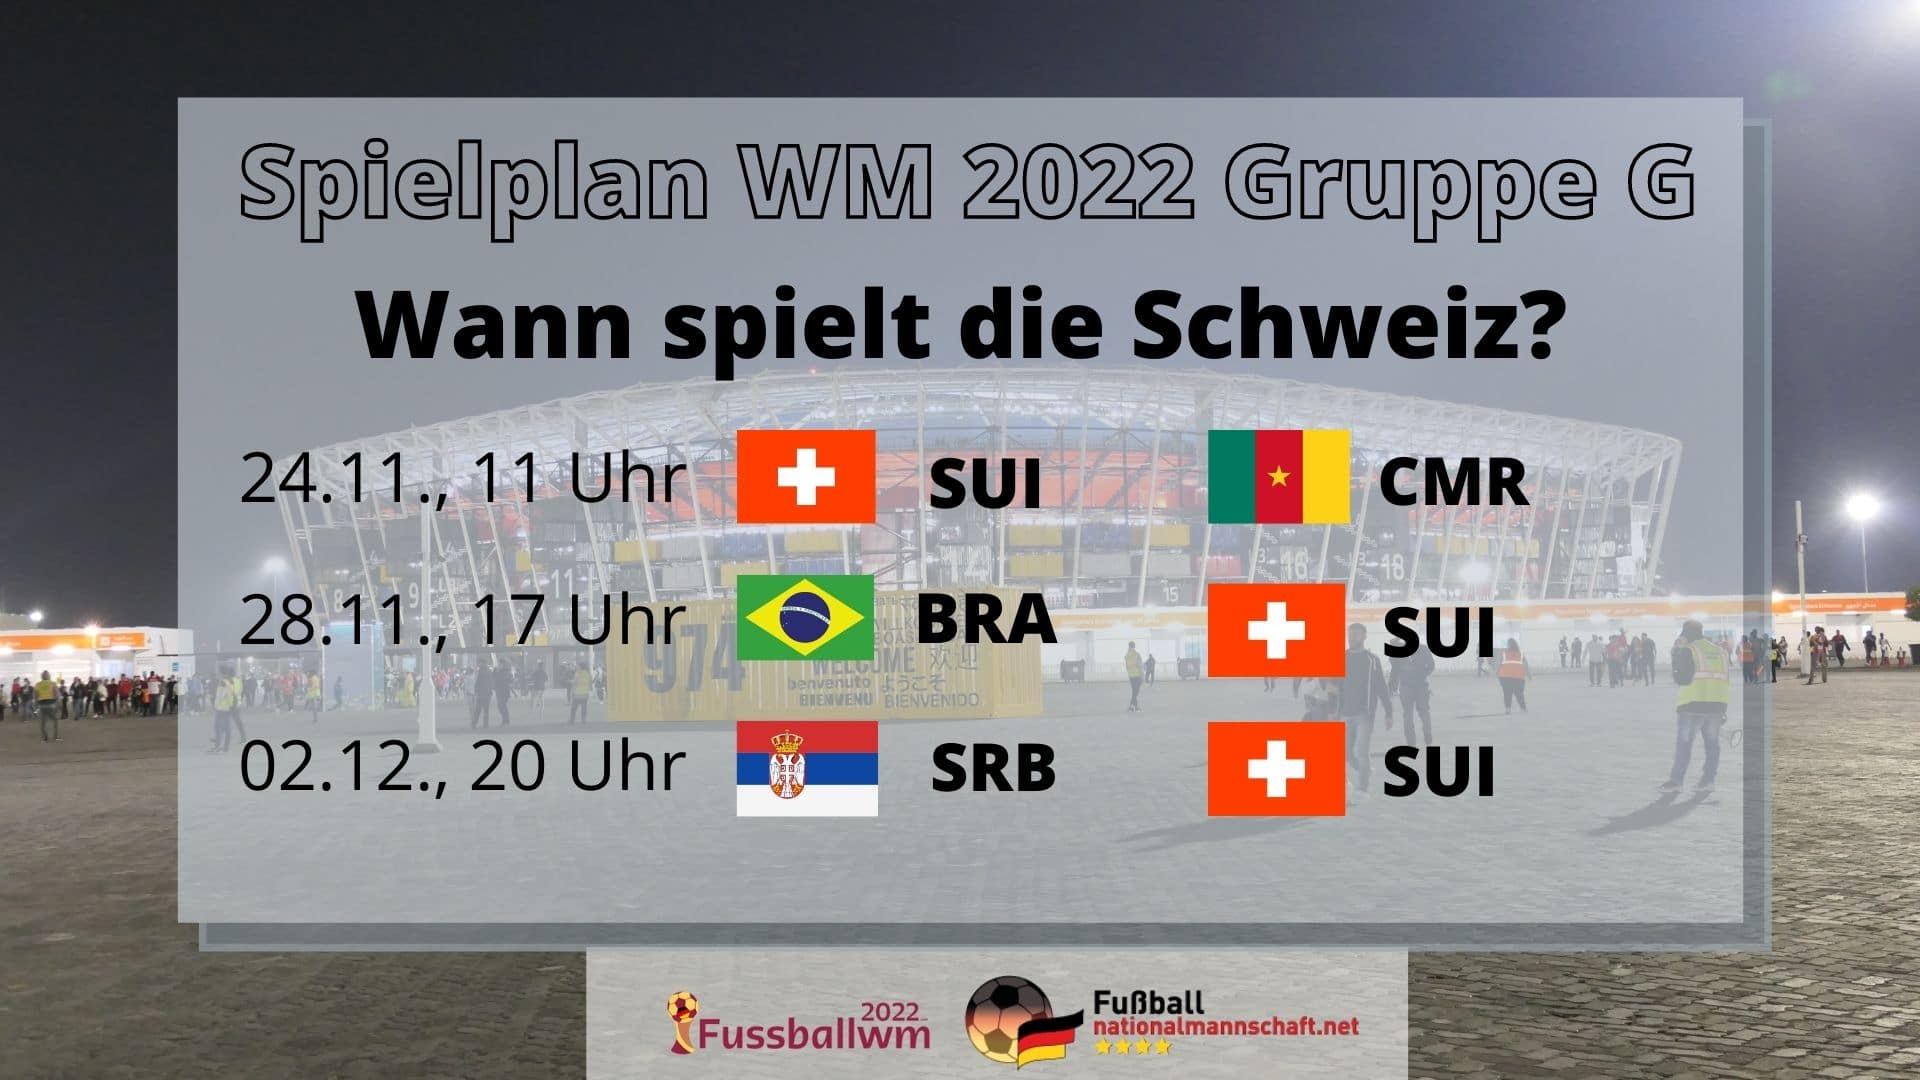 Wann spielt die Schweiz bei der WM 2022?